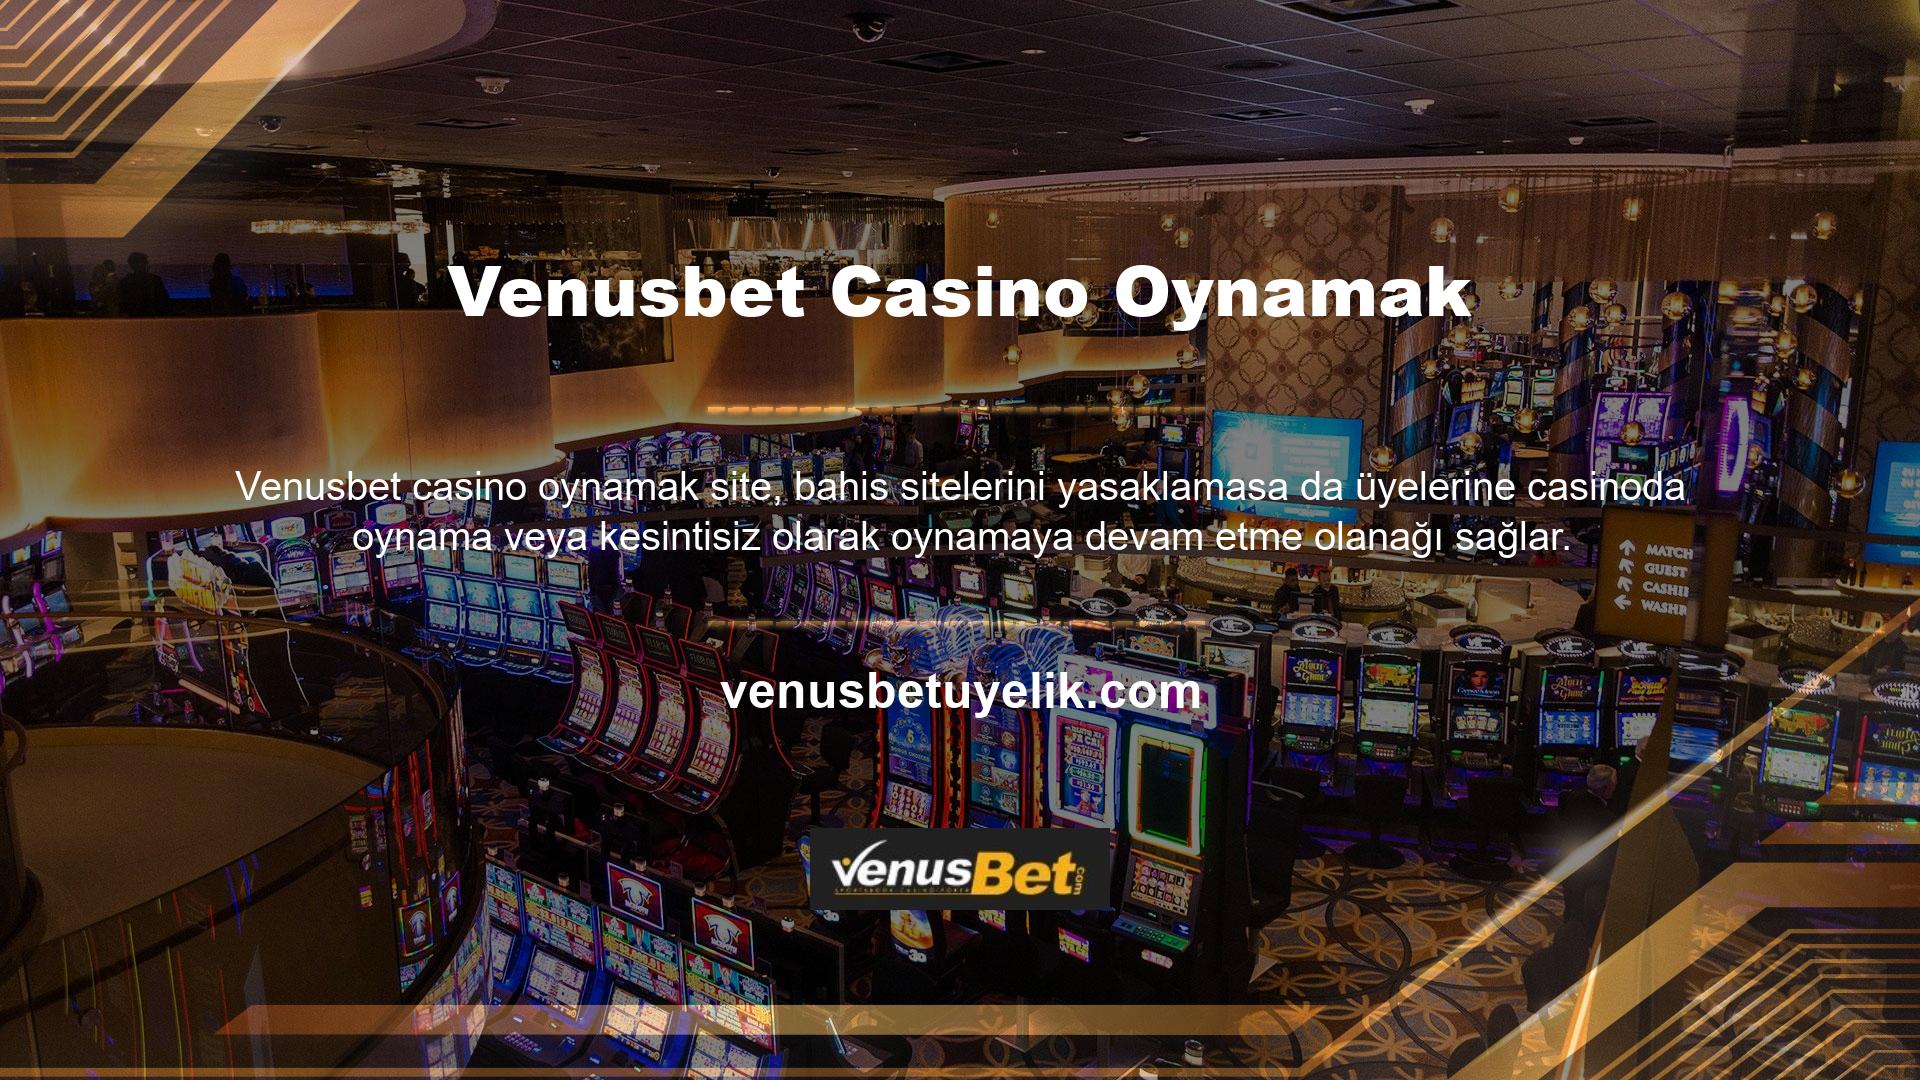 Venusbet yeni adresinde oyuncuların erişebileceği en önemli hizmetlerden biri de güvenli ödeme özelliği